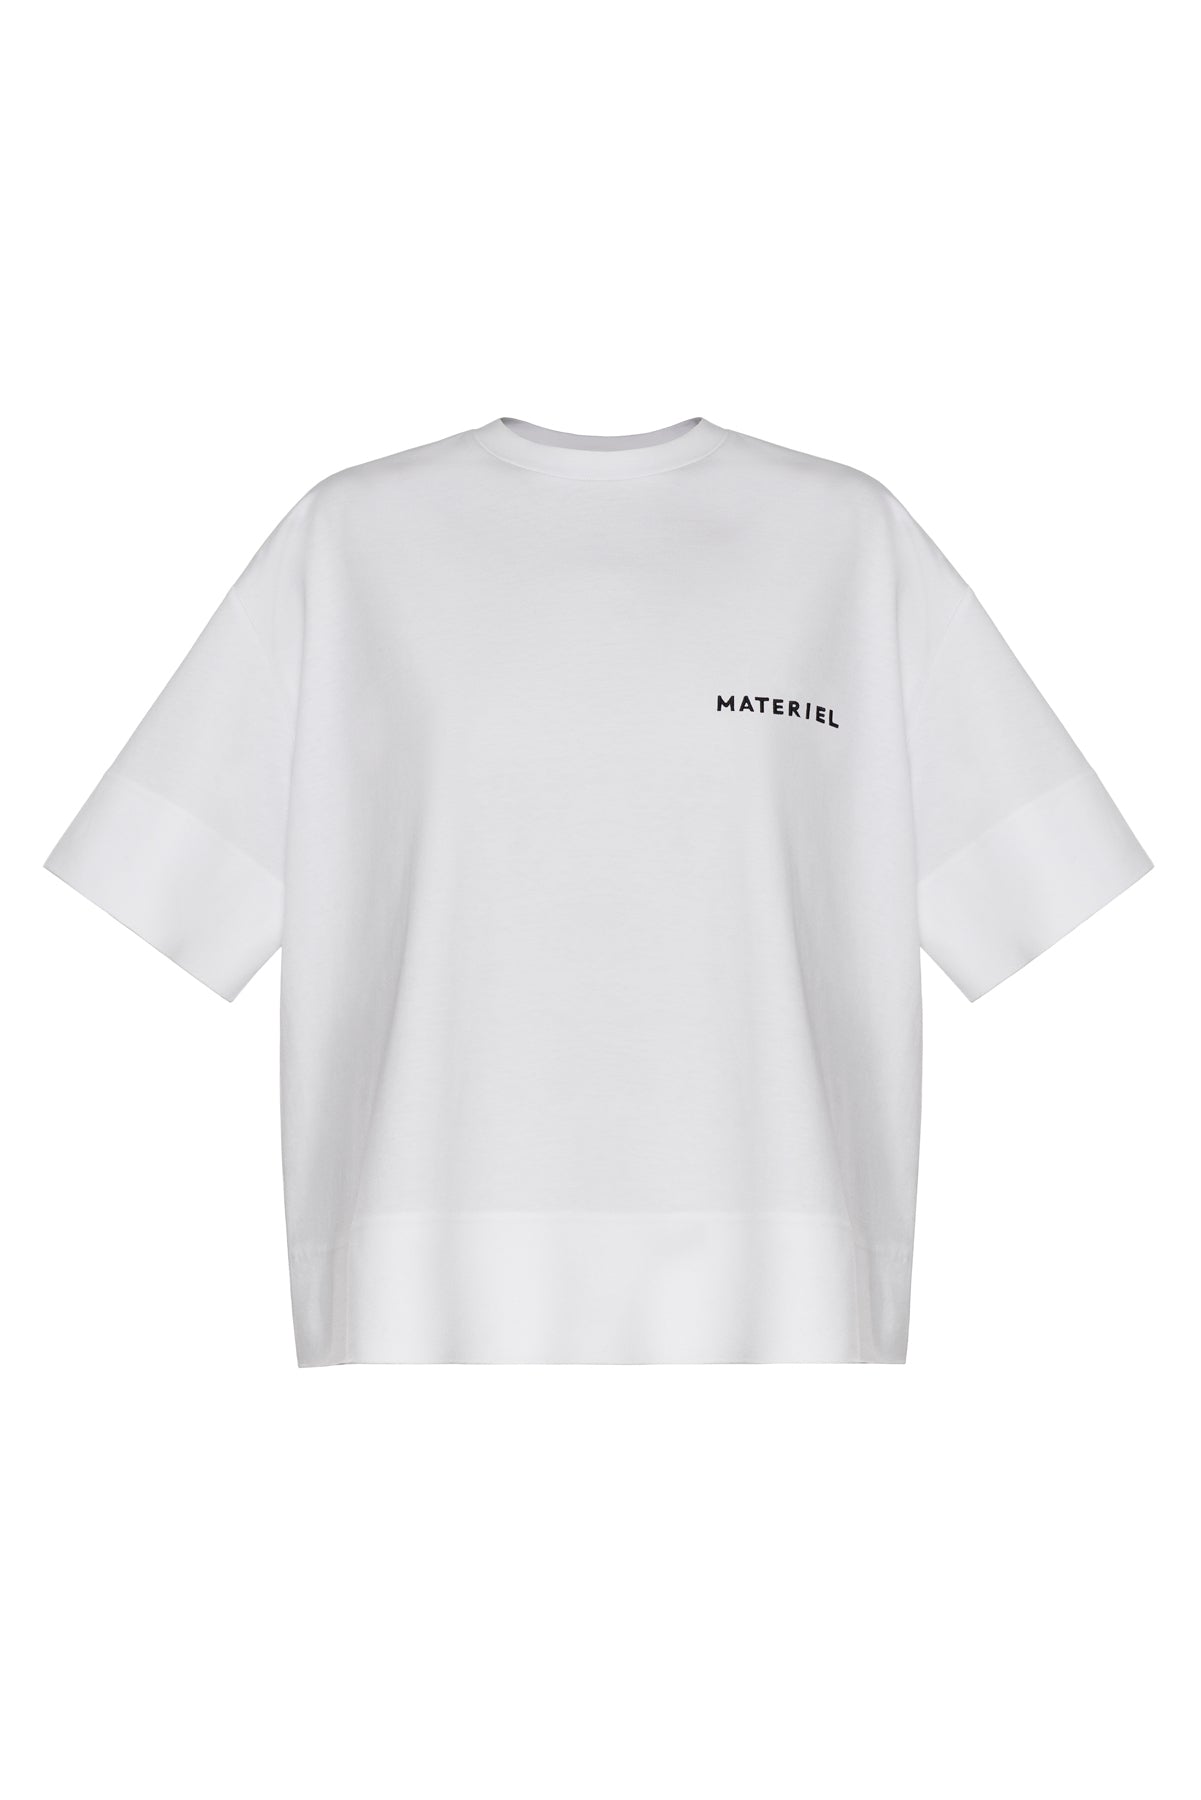 Materiel Logo T-Shirt | Materiel